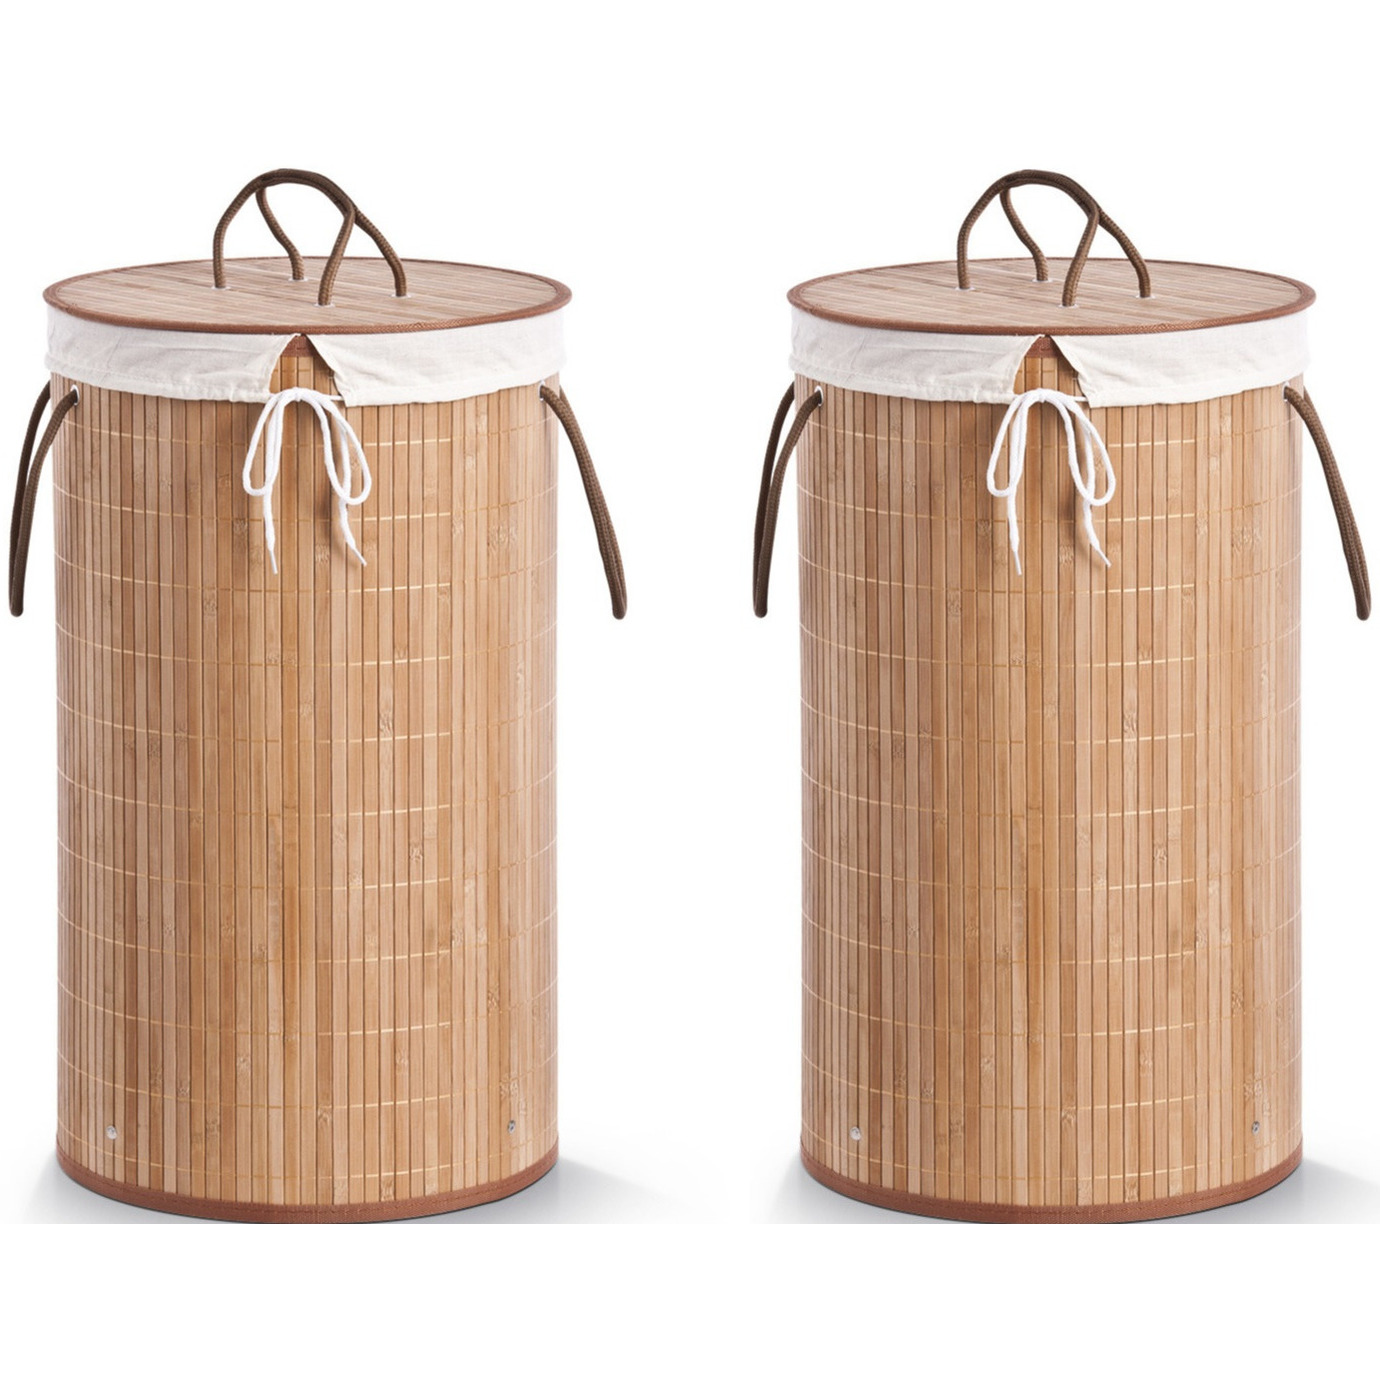 2x Luxe ronde bruine wasmanden van bamboe hout 35 x 60 cm